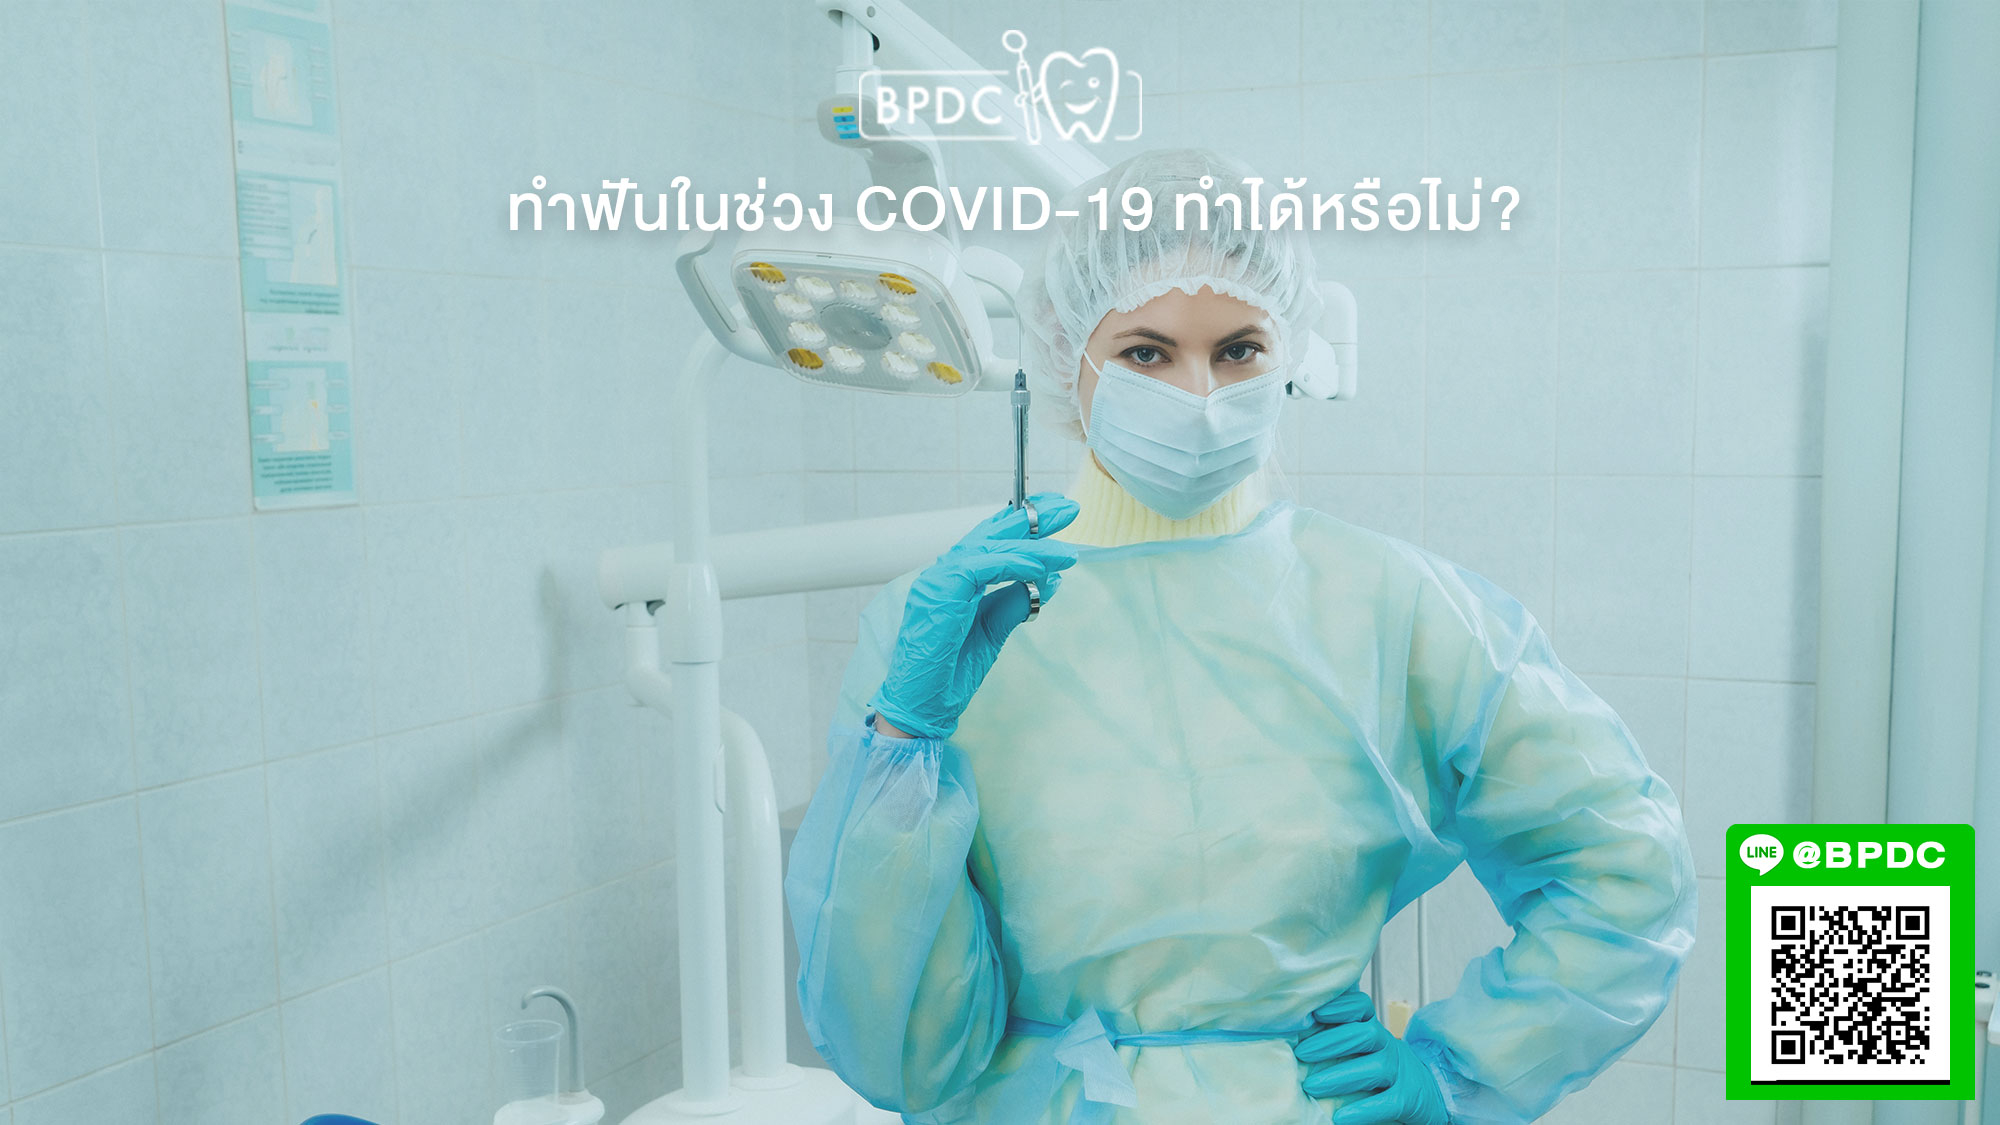 ทำฟันในช่วง Covid-19 ทำได้หรือไม่